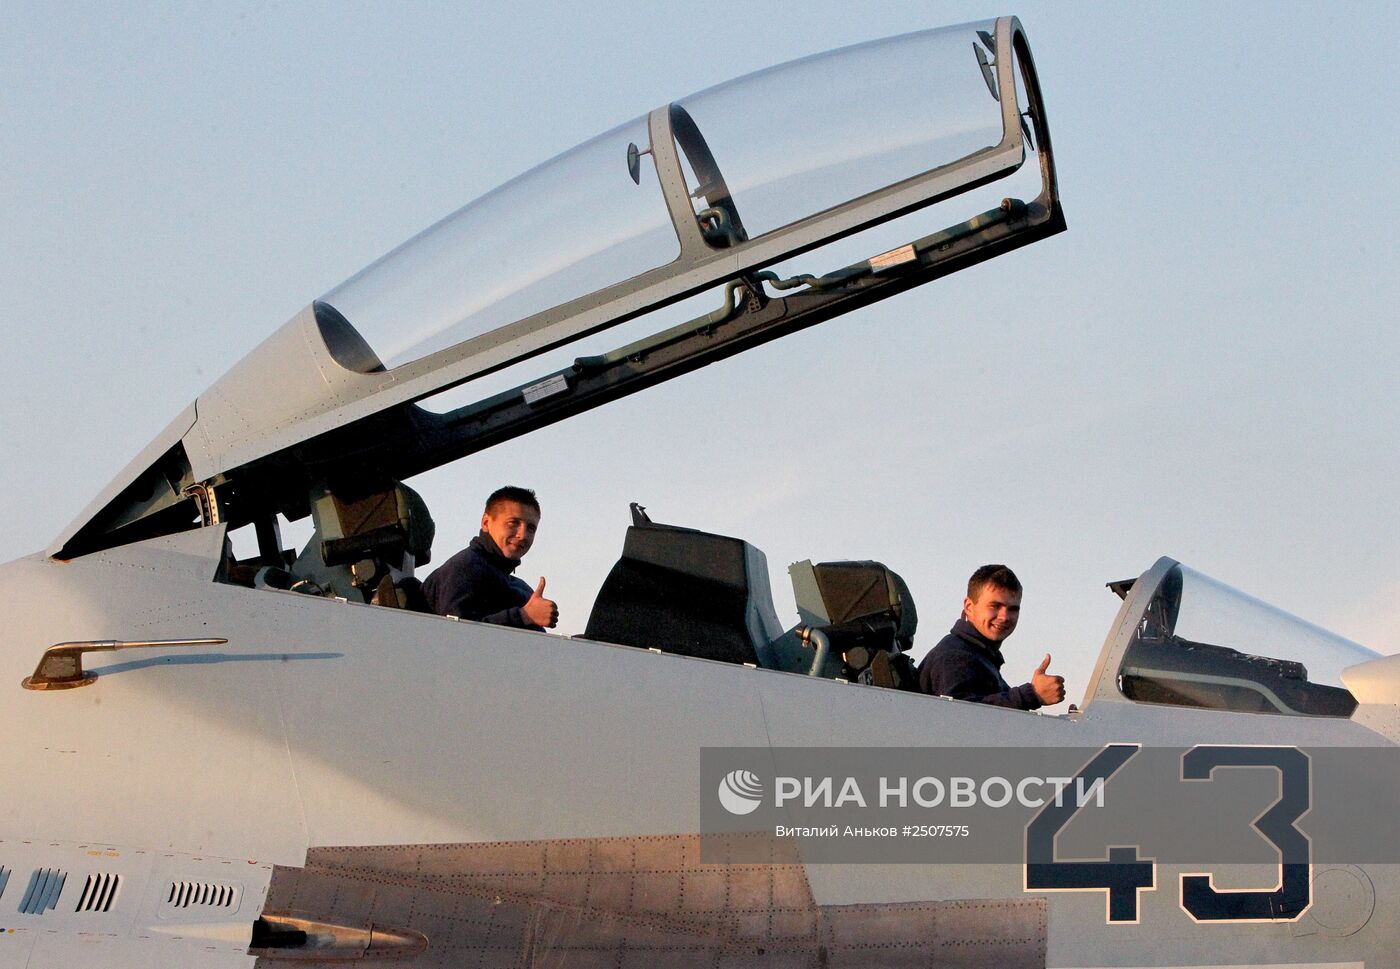 Авиаполк Восточного военного округа получил два новых истребителя Су-30 М2